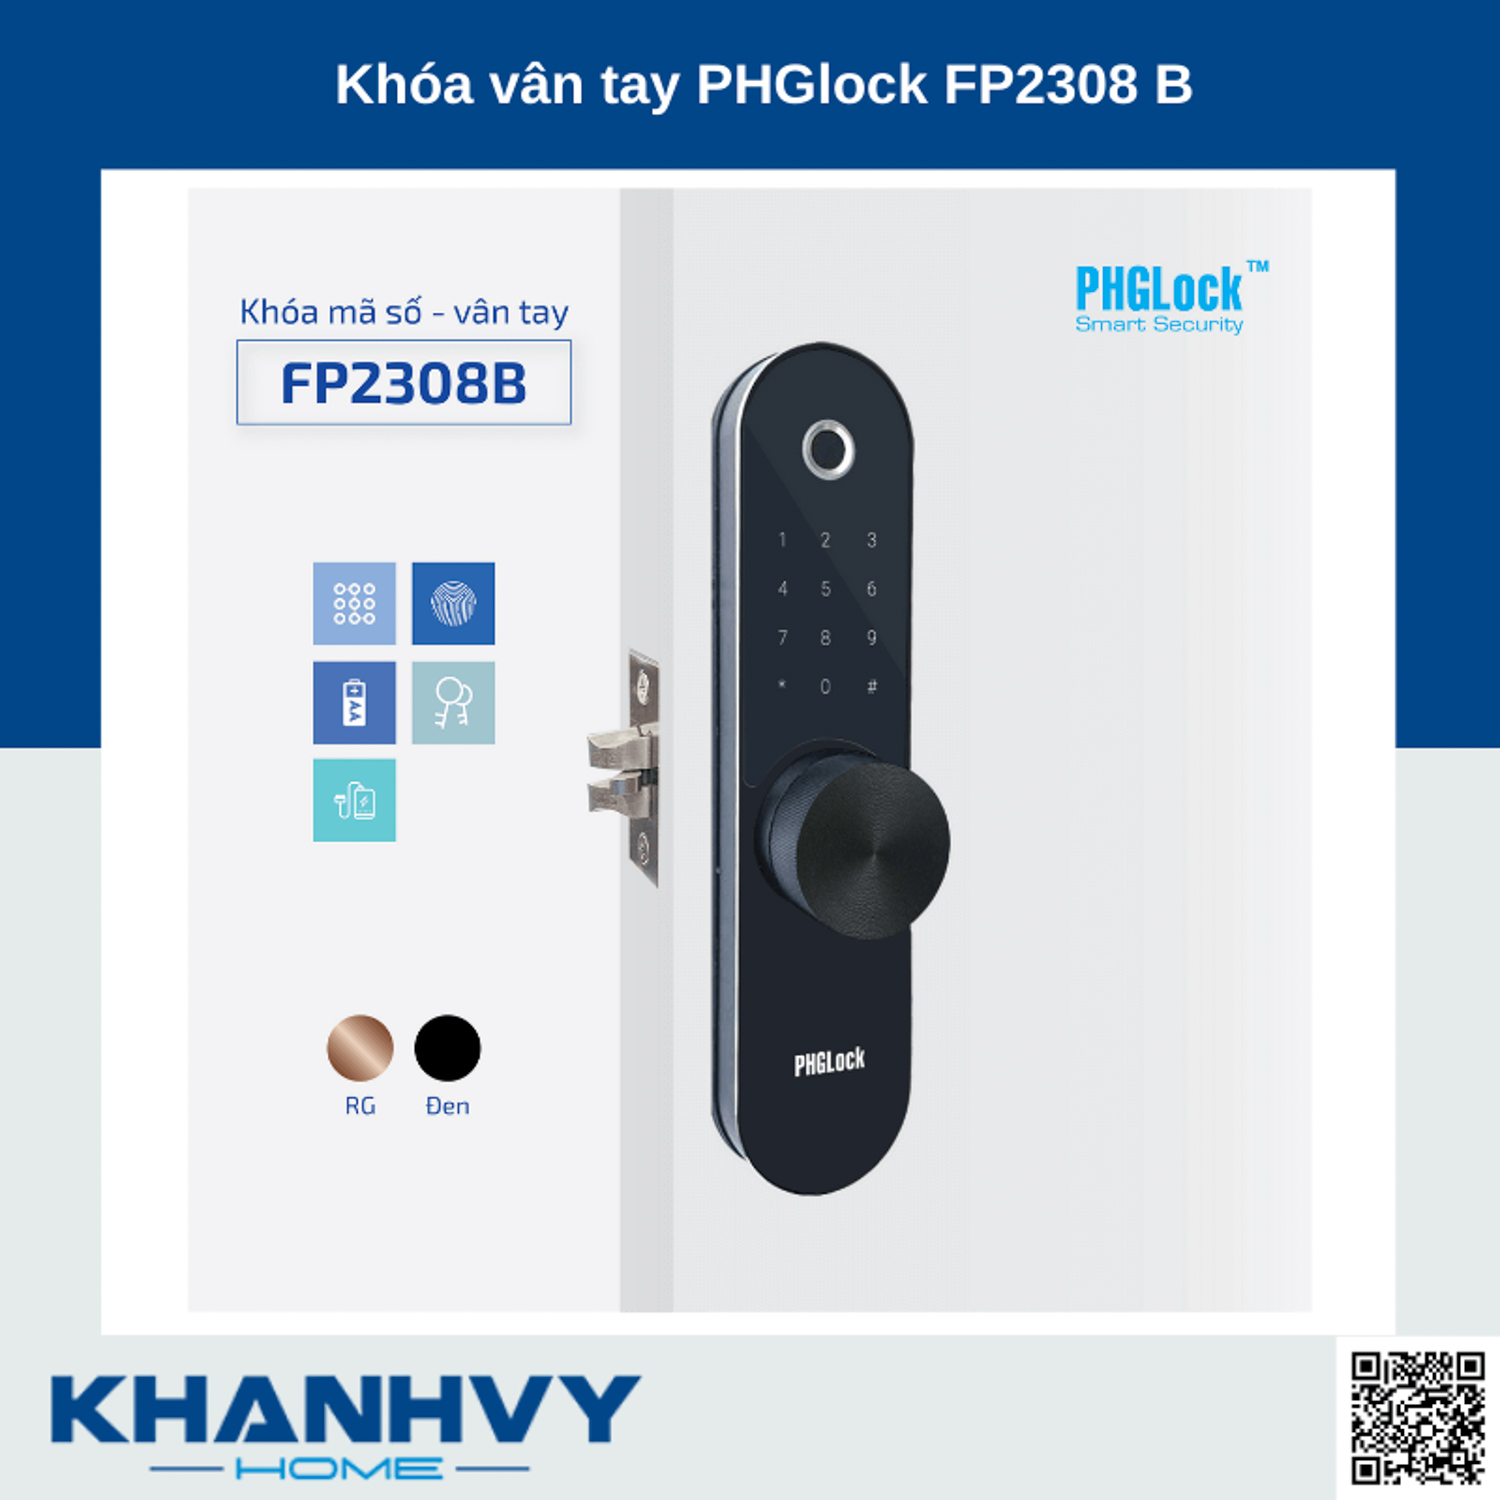 Sản phẩm khóa vân tay PHGlock FP2308-B sở hữu thiết kế hiện đại và sang trọng